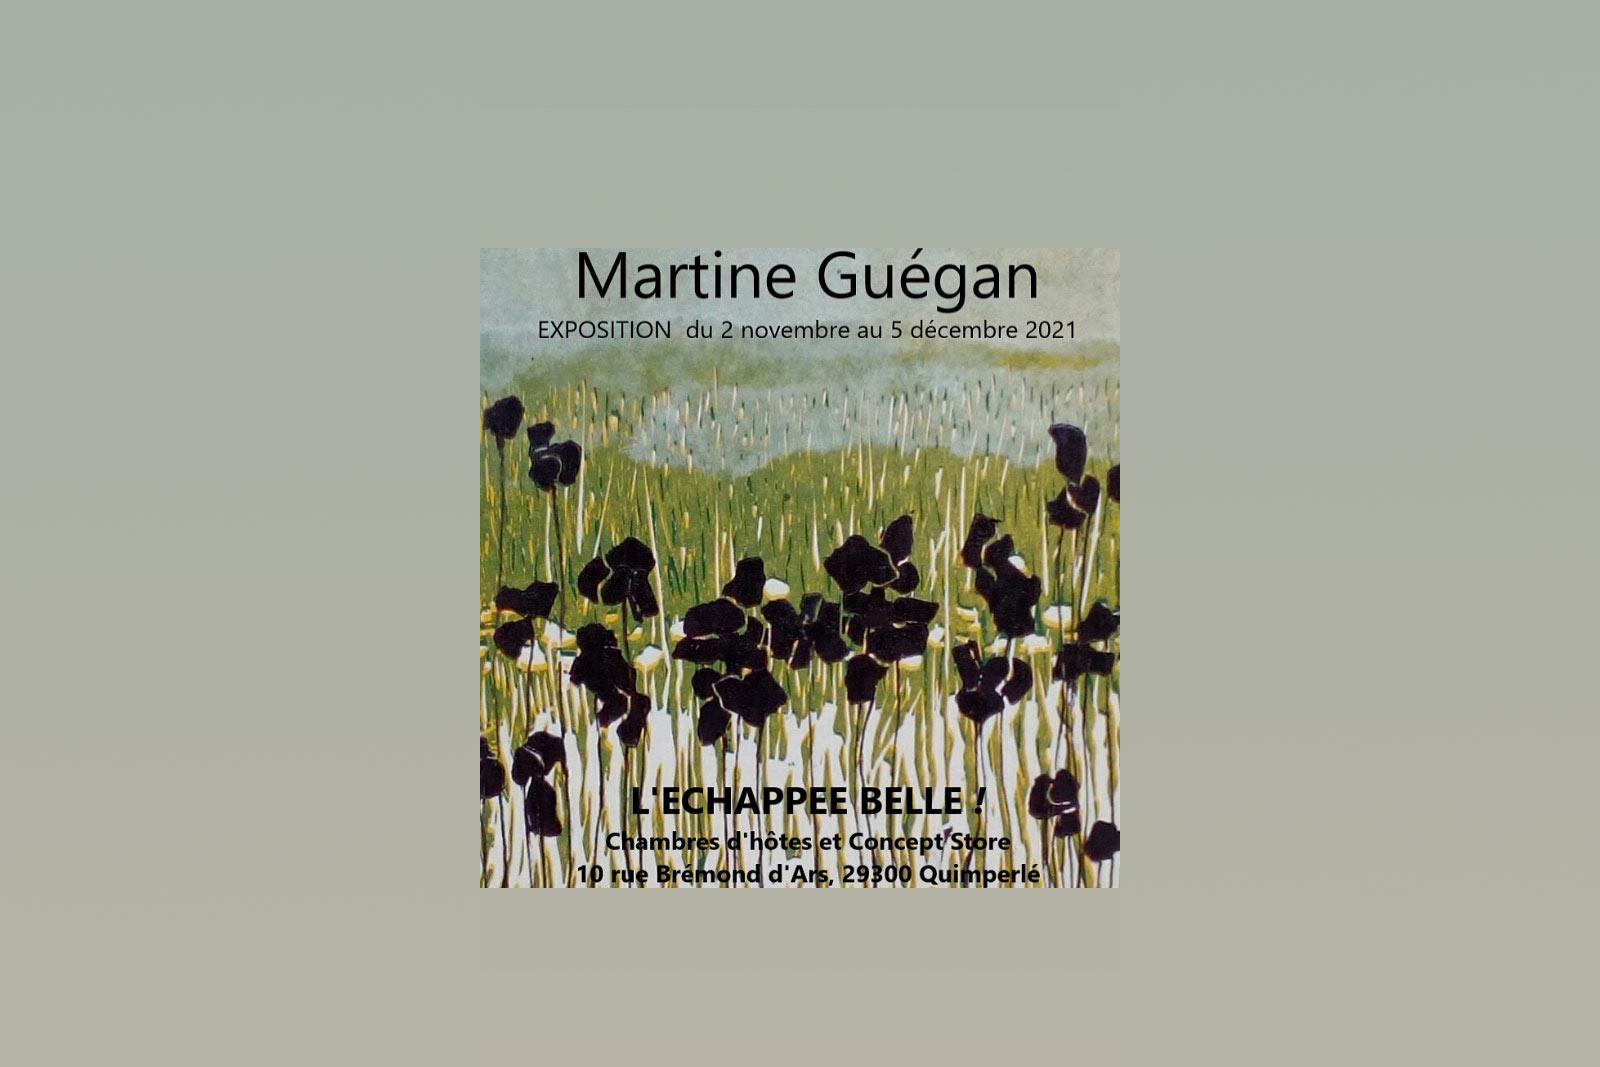 Exposition de linogravures sur bois de Martine Guégan à L'Échappée Belle à Quimperlé du 5 novembre au 3 décembre 2021